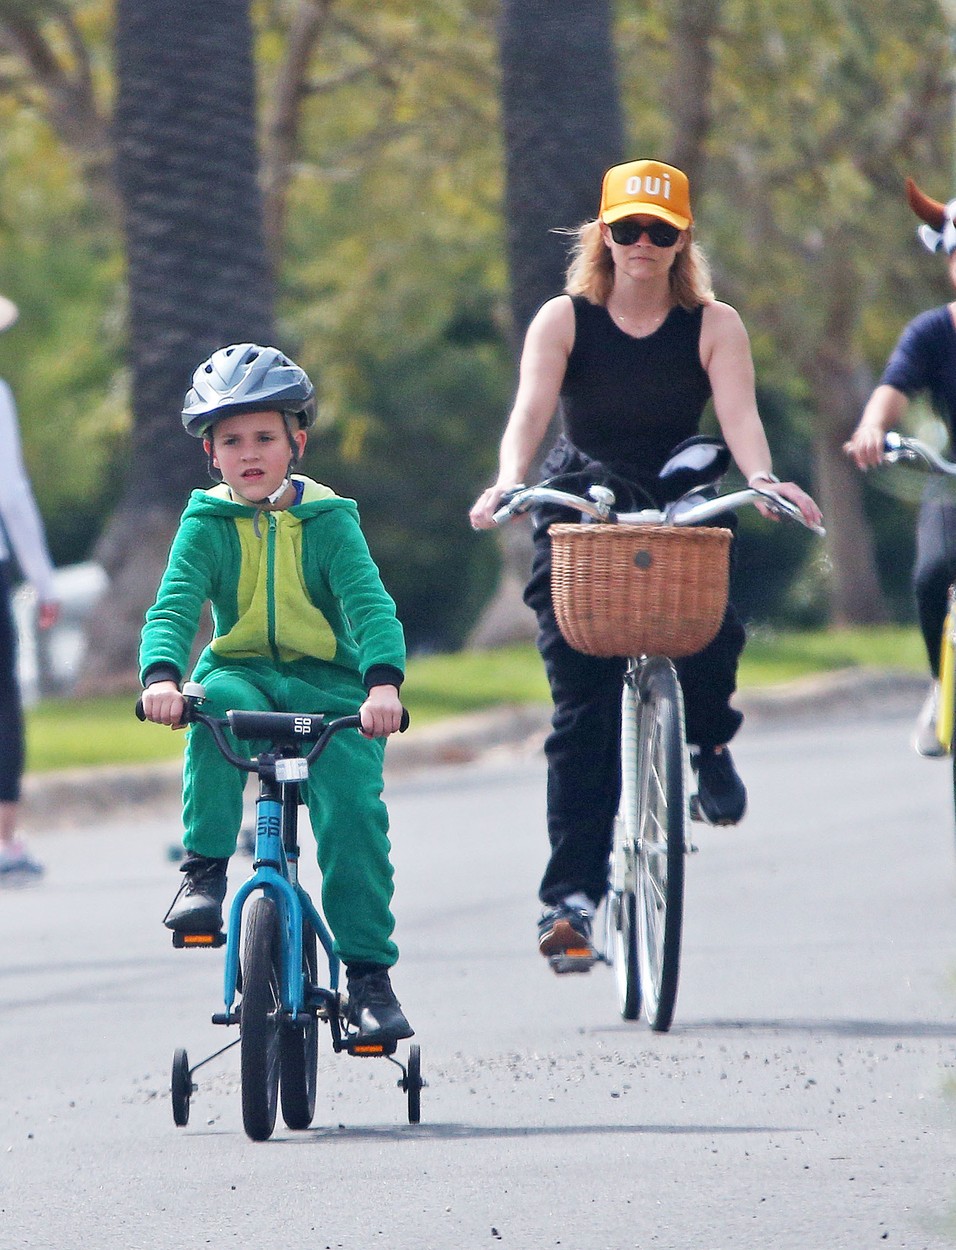 Tennessee James Toth alături de mama, Reese Whiterspoon, la o plimbare cu bicicleta în parc